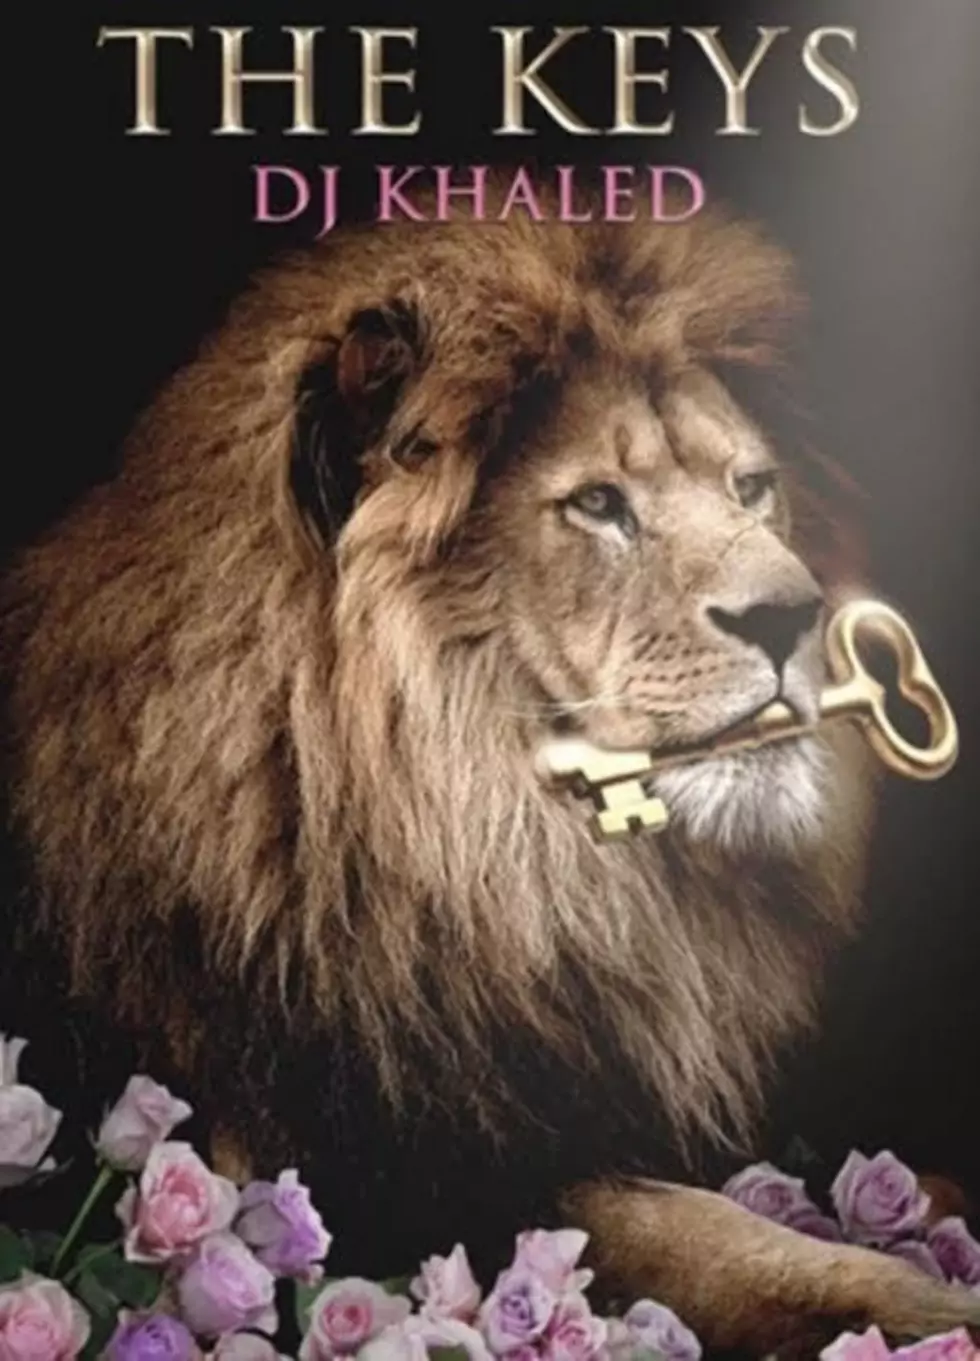 DJ Khaled Is Releasing a Book Full of Keys